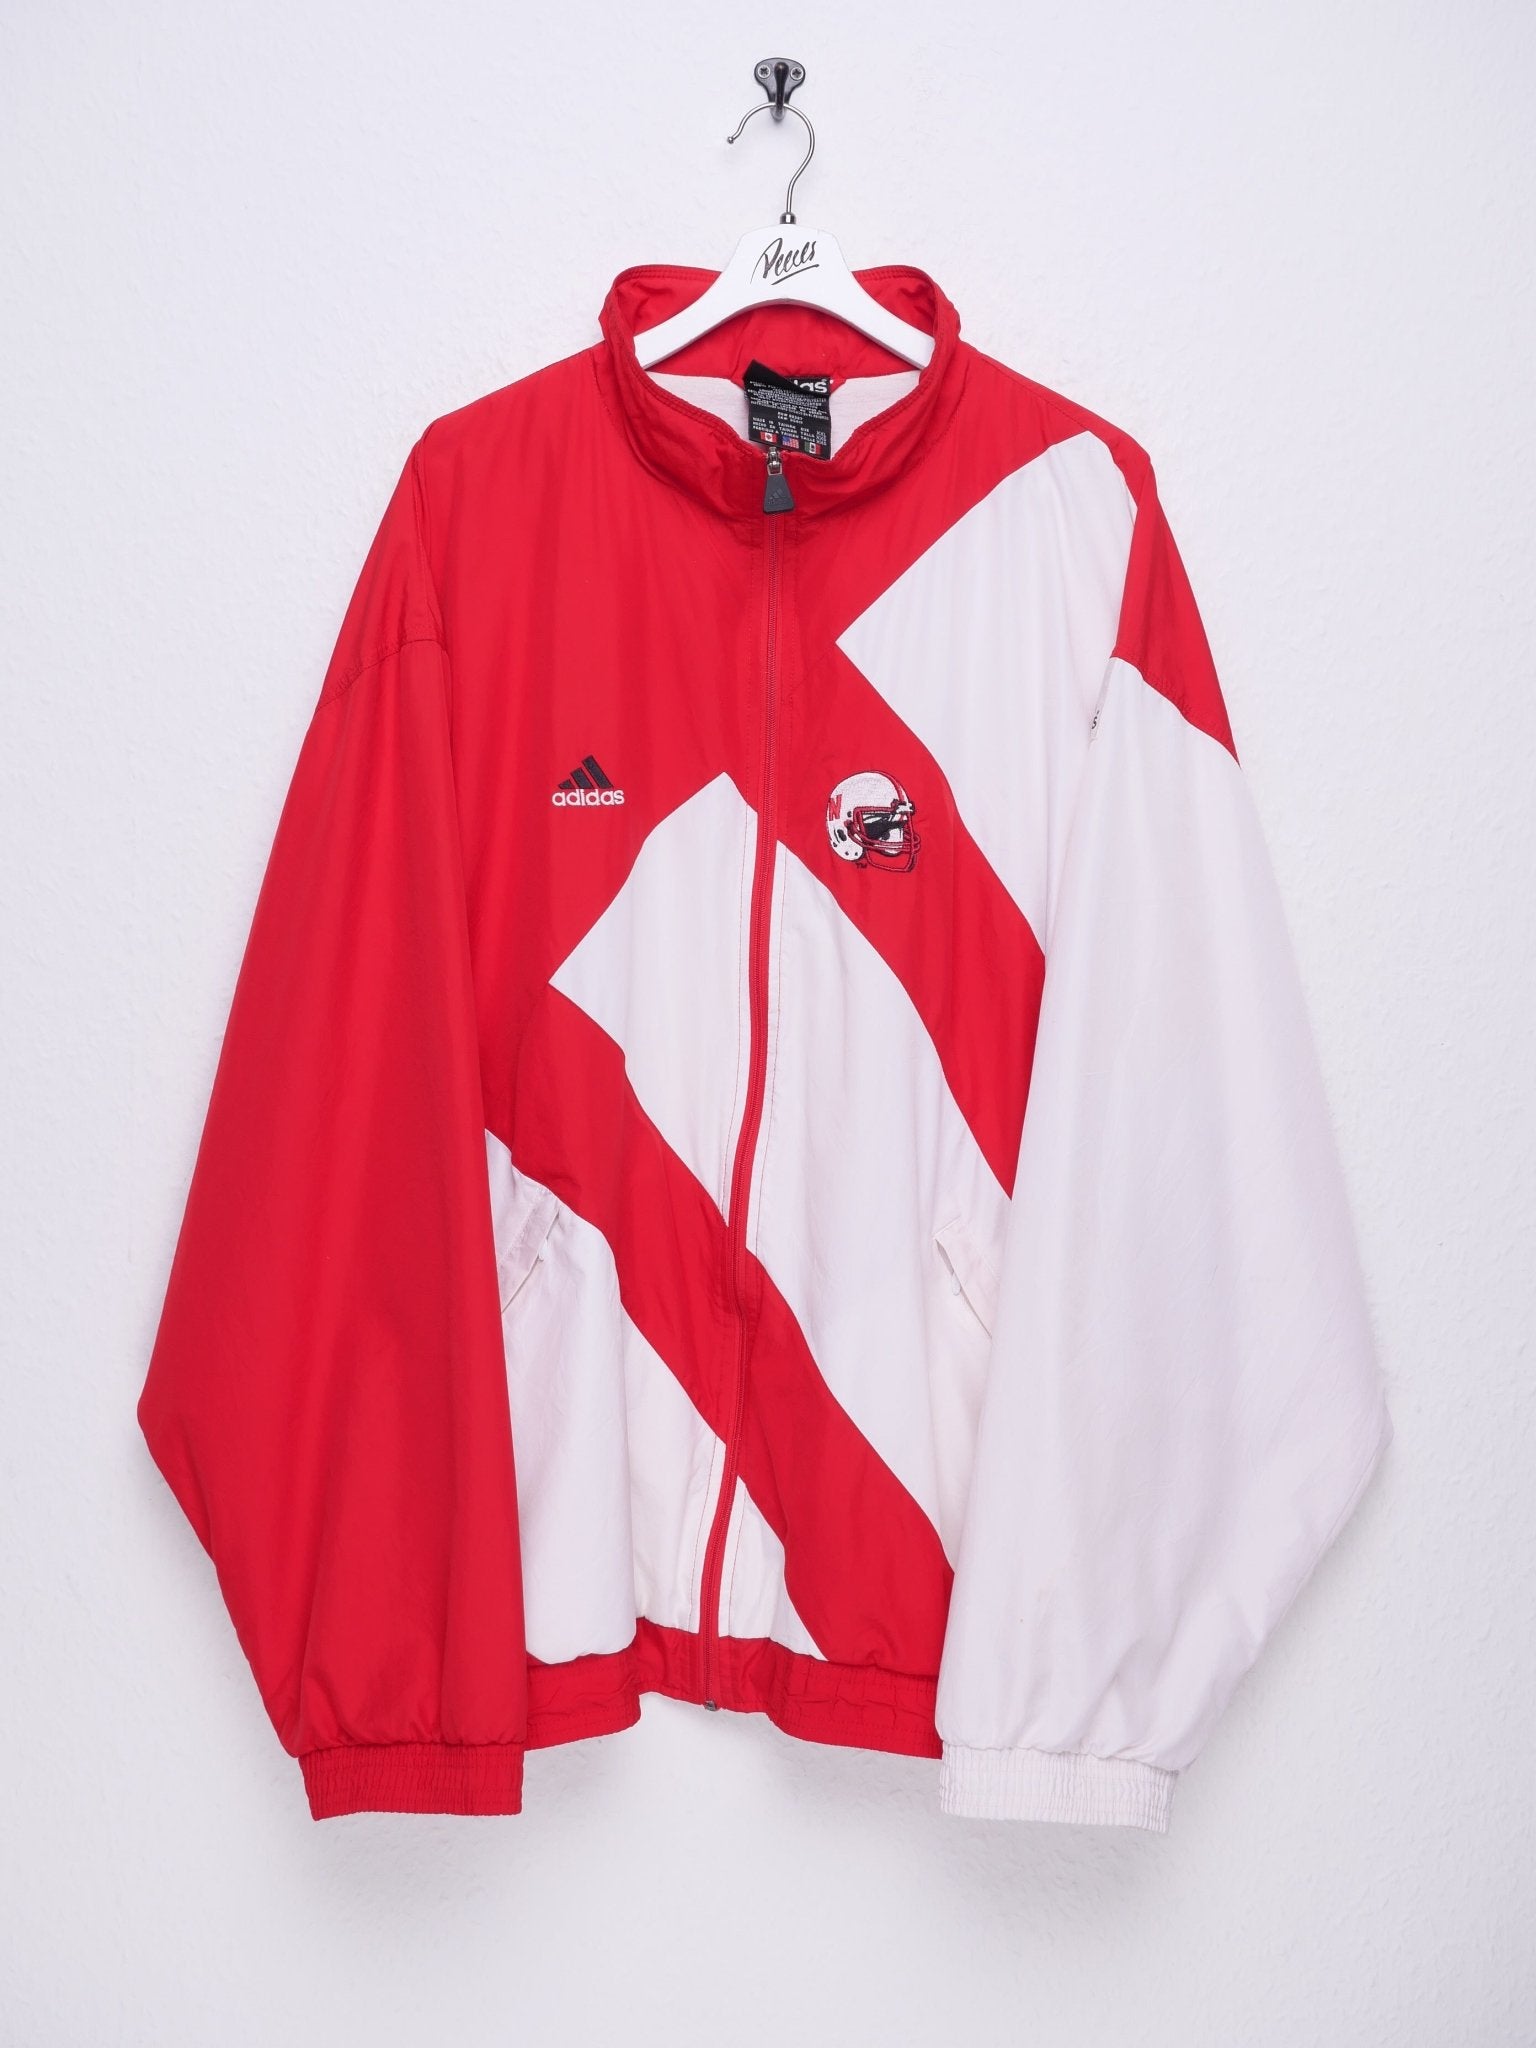 Adidas embroidered Nebraska Football Logo 1990 Vintage Track Jacke - Peeces